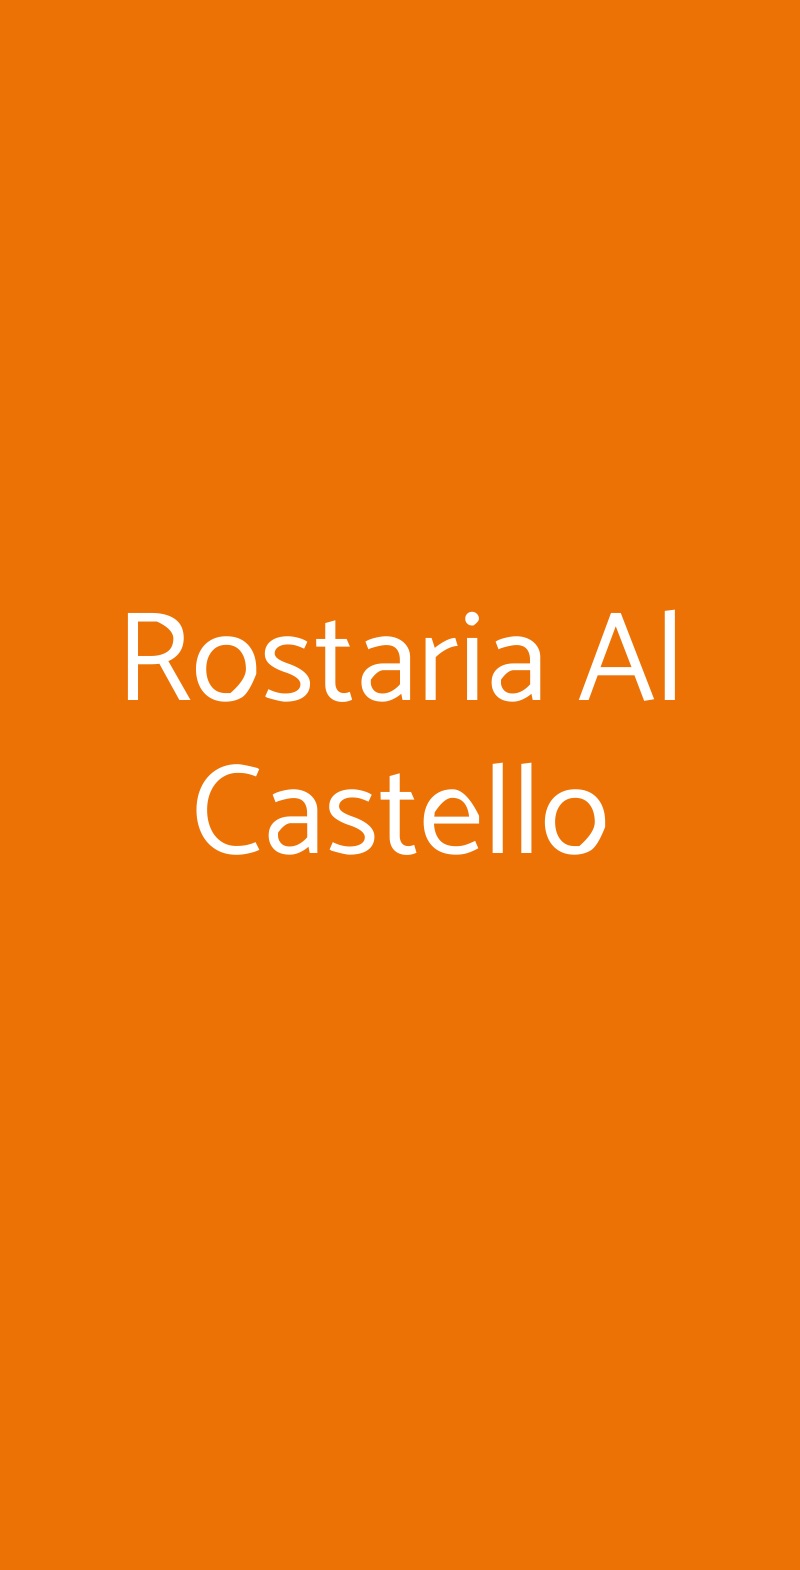 Rostaria Al Castello Arceto menù 1 pagina